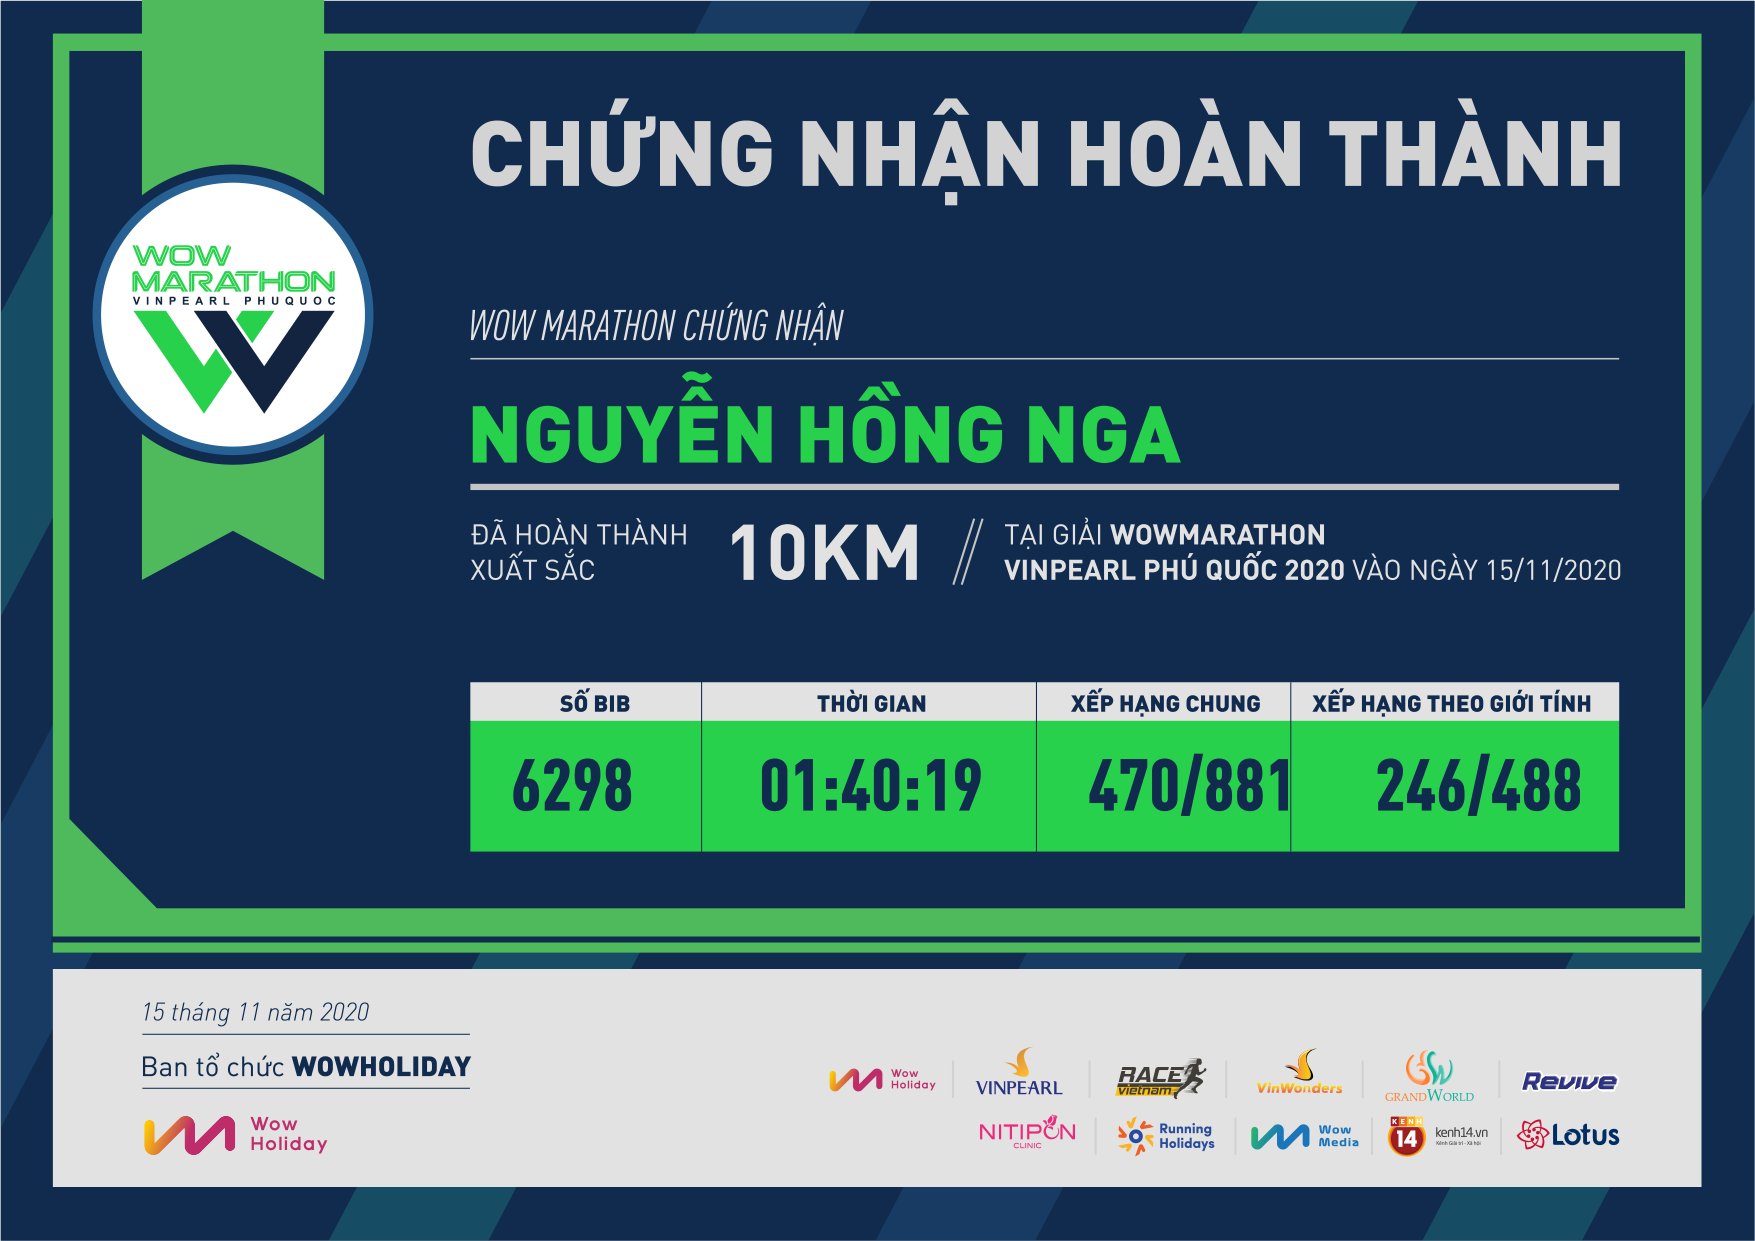 6298 - Nguyễn Hồng Nga